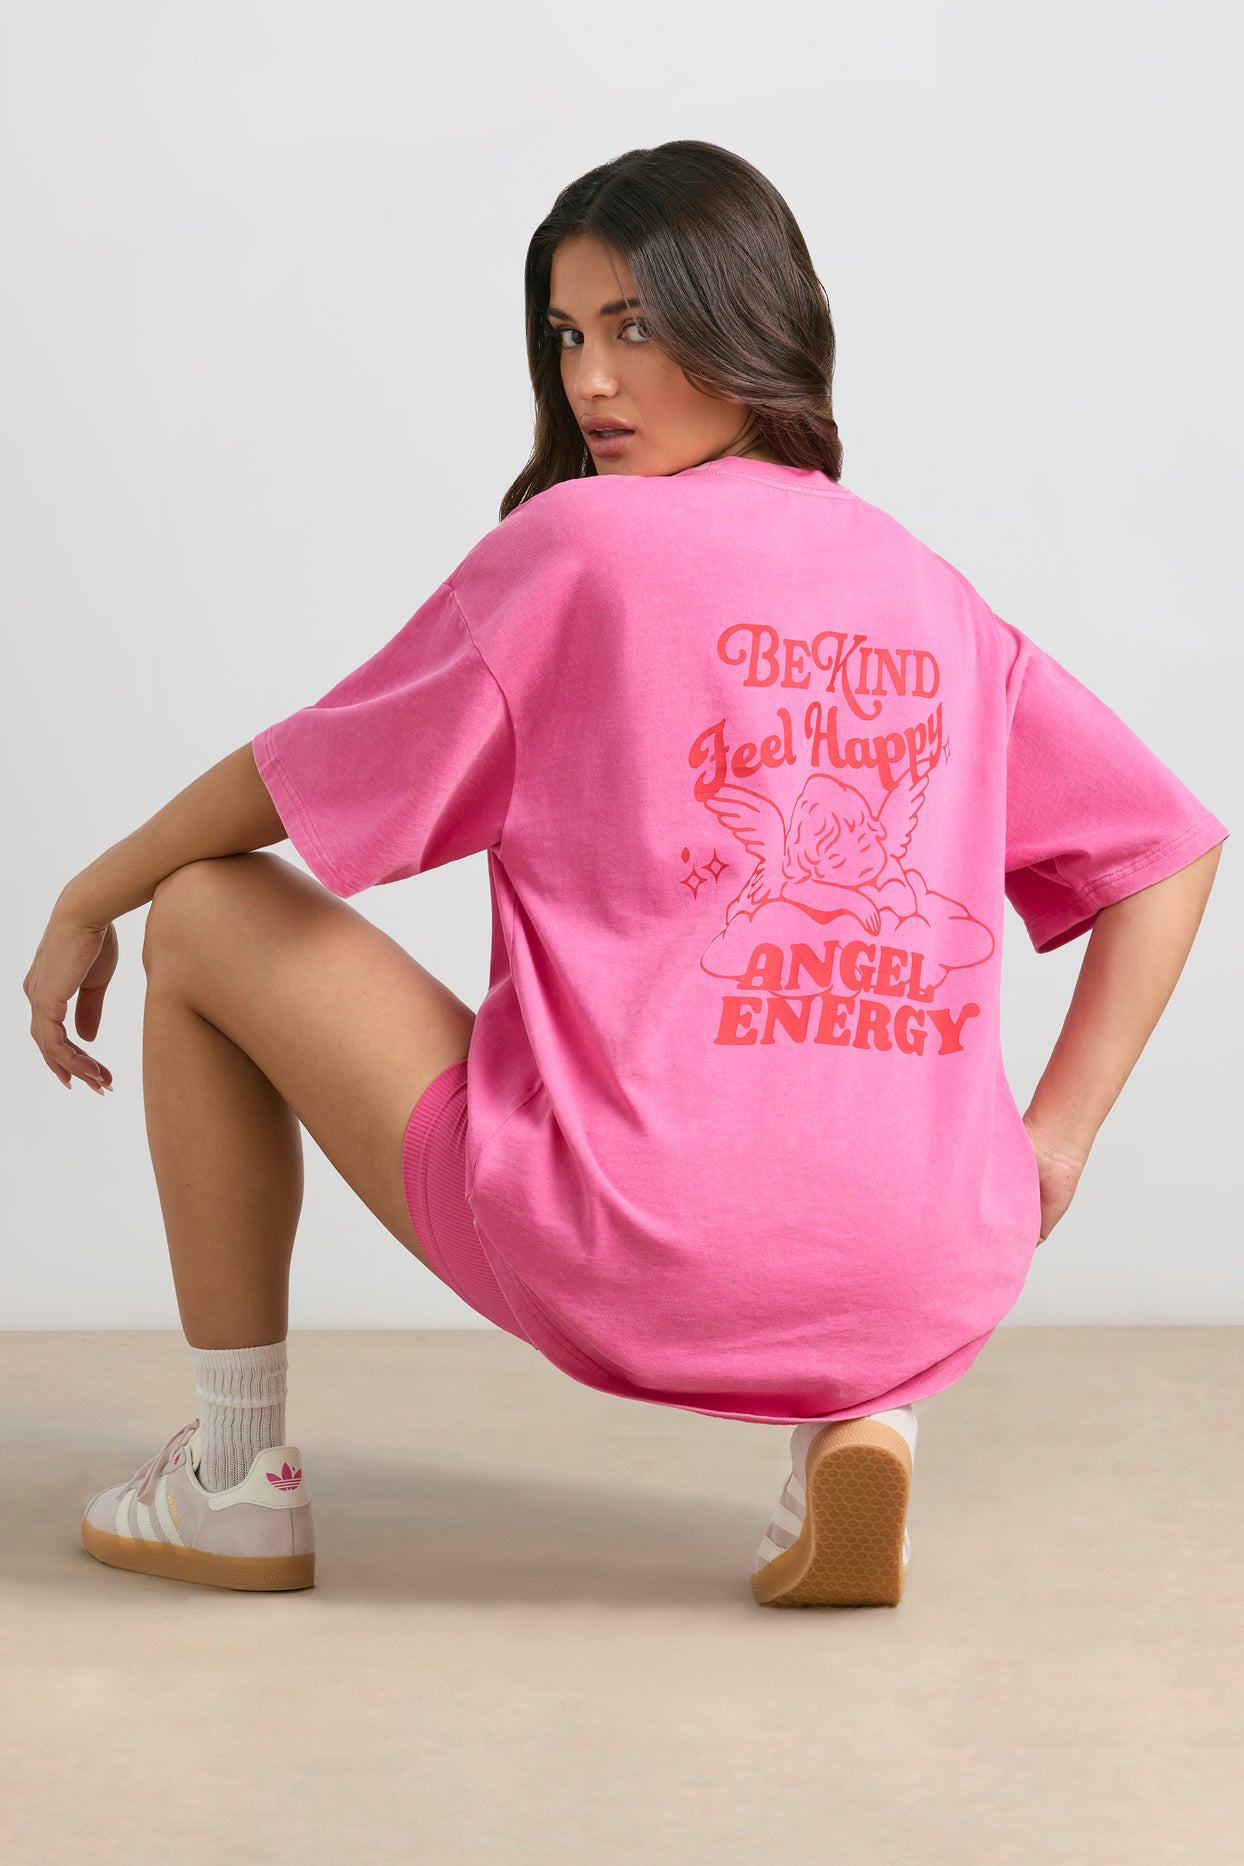 T-shirt oversize à manches courtes en rose vif